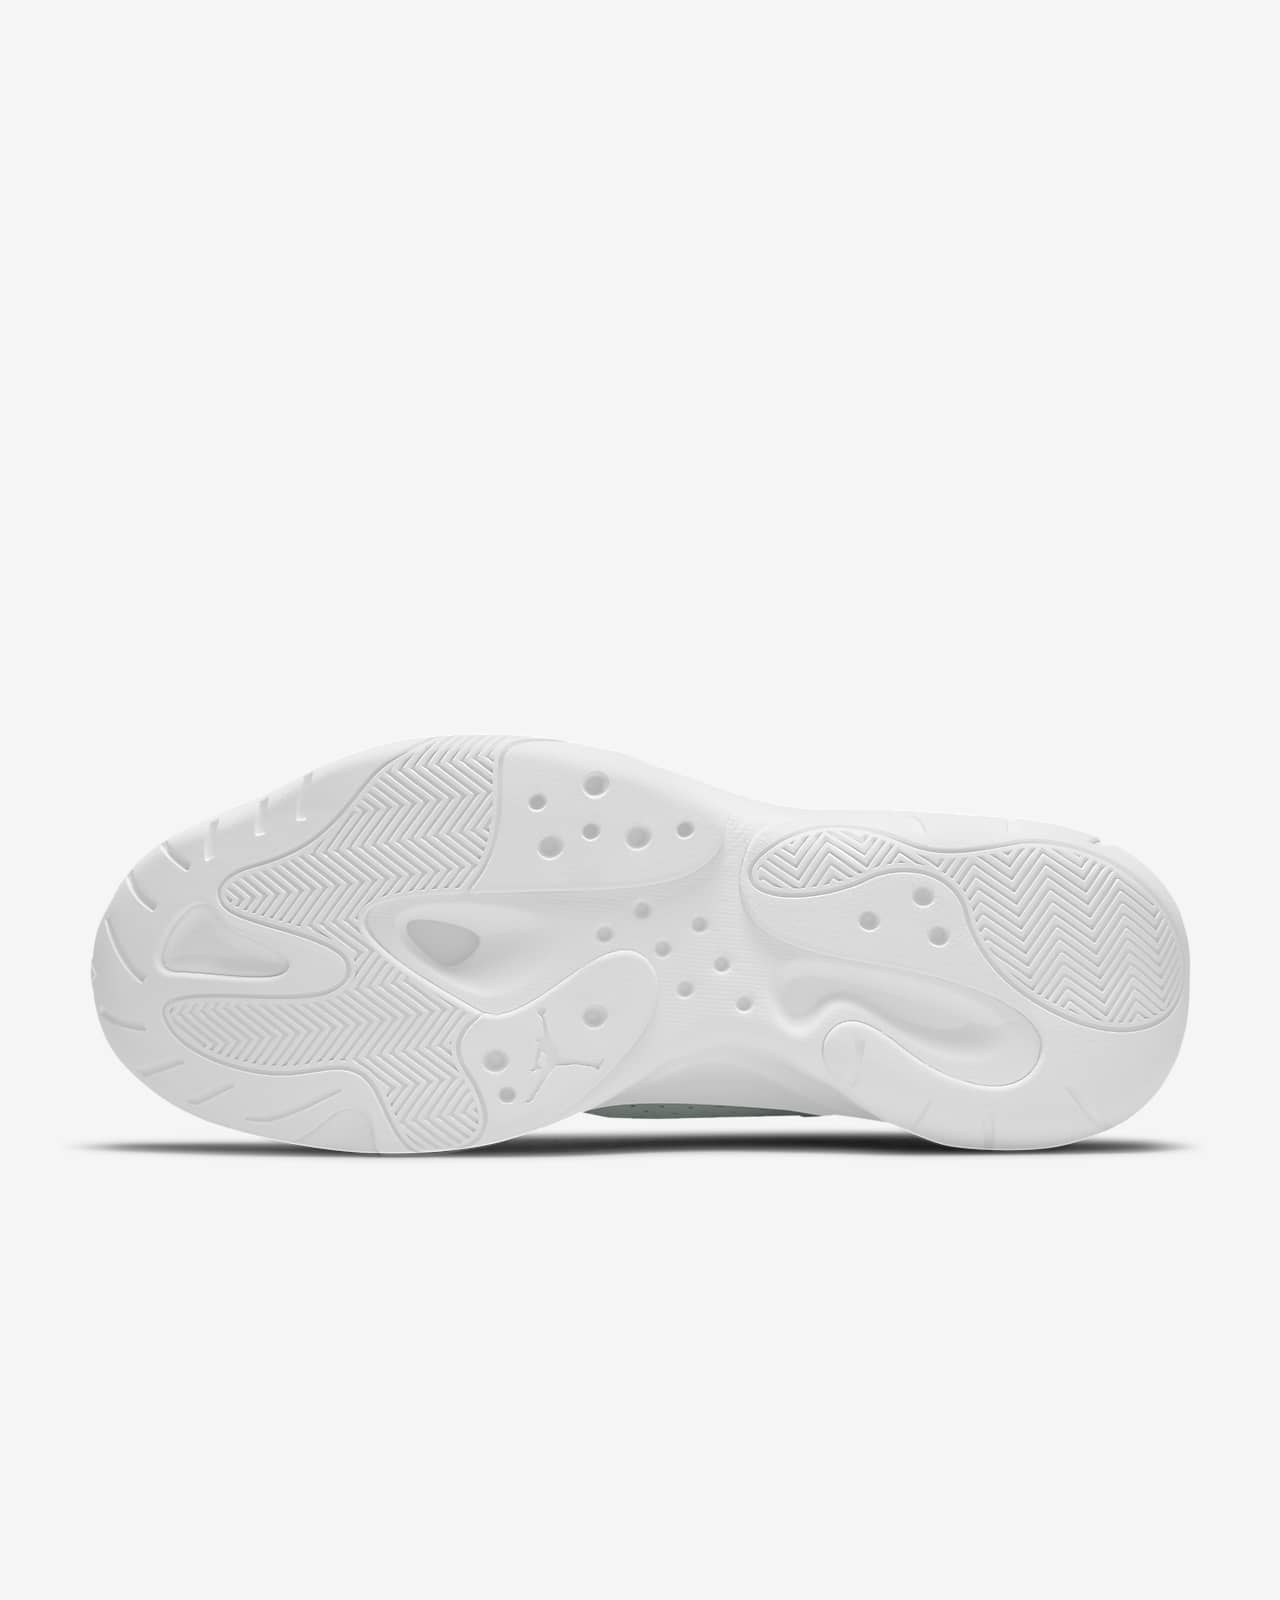 Air Jordan 11 CMFT Low Men's Shoes. Nike LU